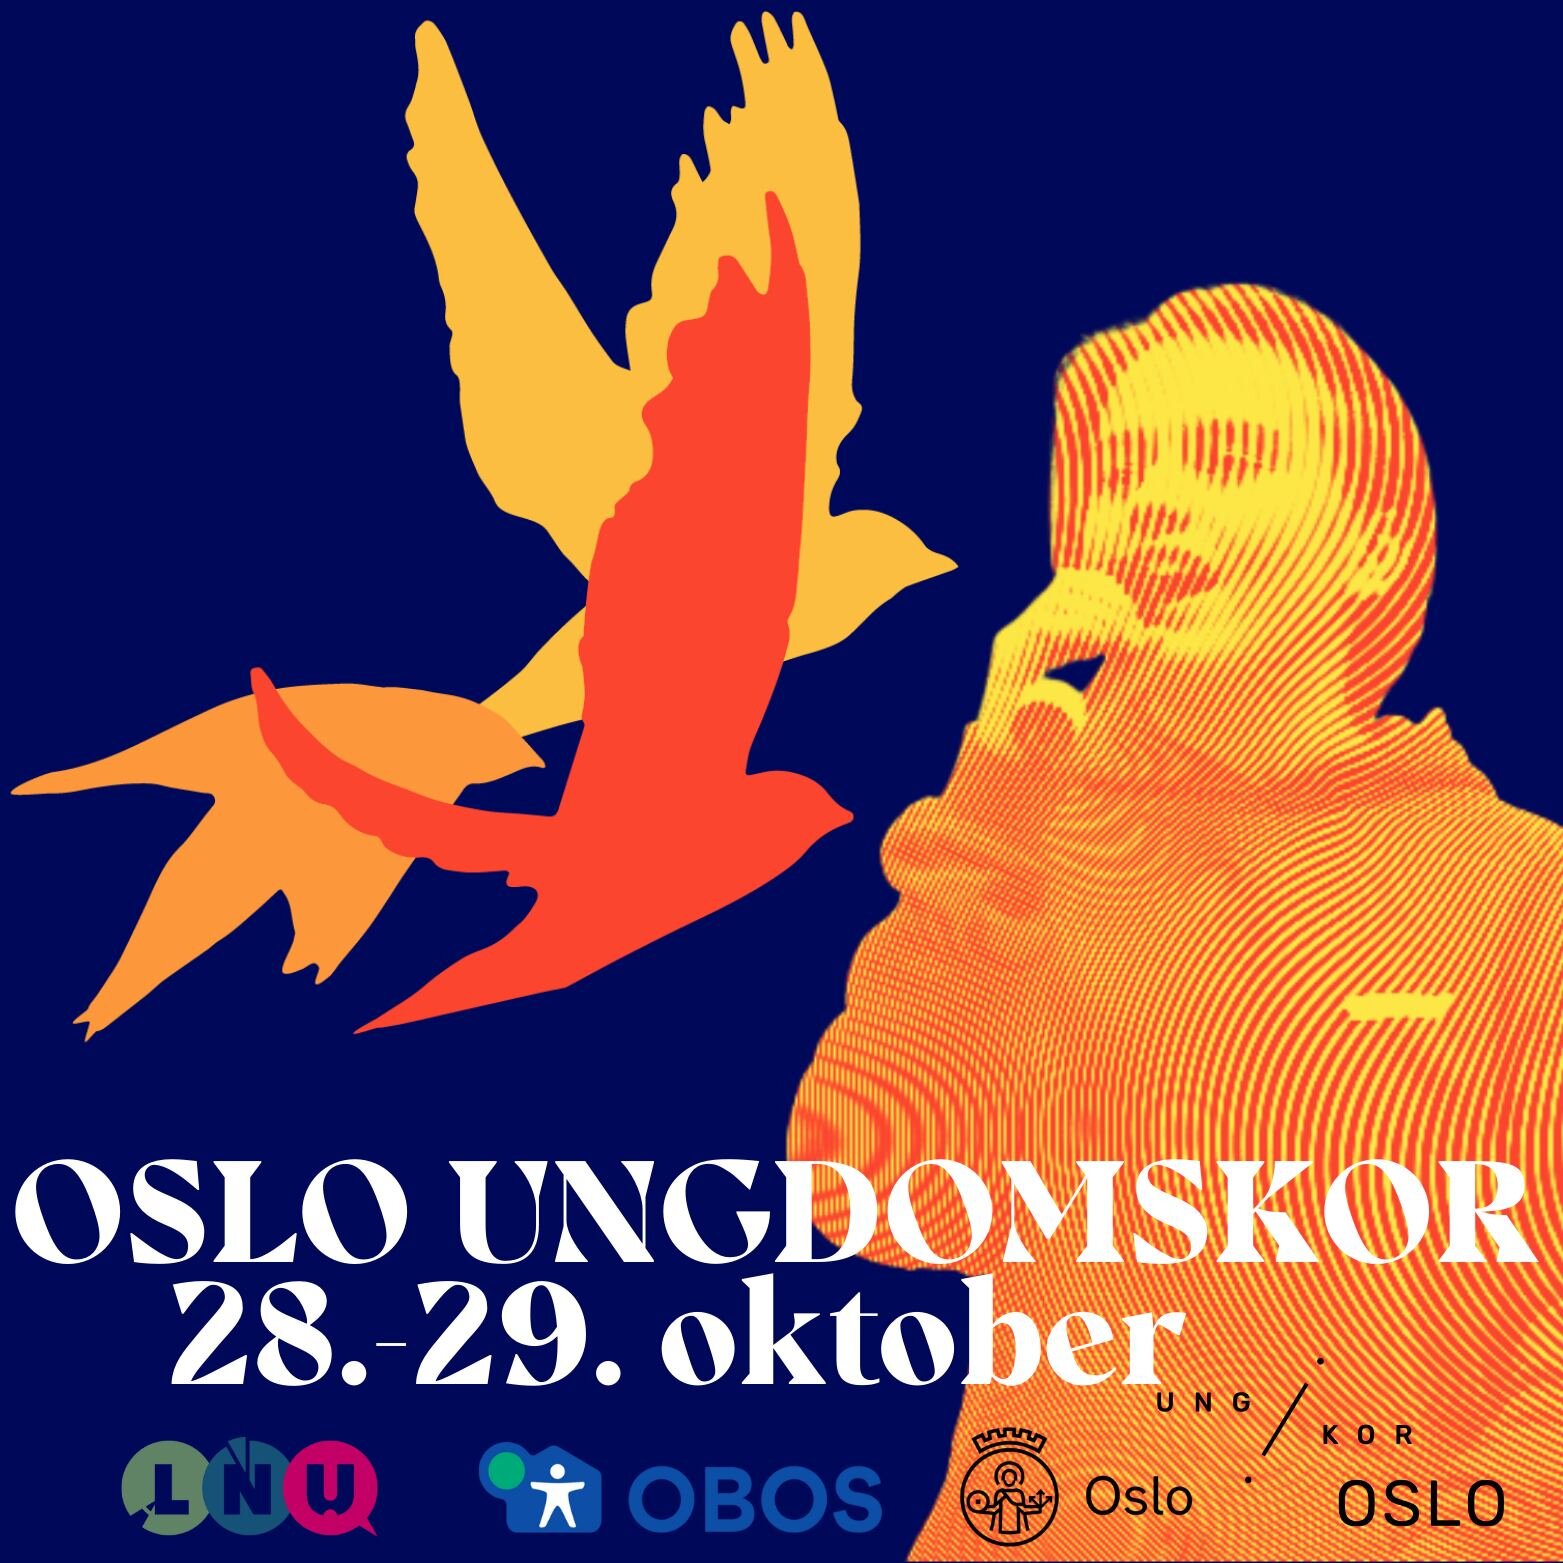 Oslo Ungdomskor inviterer til en ny samling 28.-29. oktober! 🦅 Workshops i korsang for aldere 13-20! Oslo Ungdomskor er et kor for deg som liker &aring; synge p&aring; tvers av musikksjangre, og du kan v&aelig;re med uavhengig av ditt niv&aring; og 